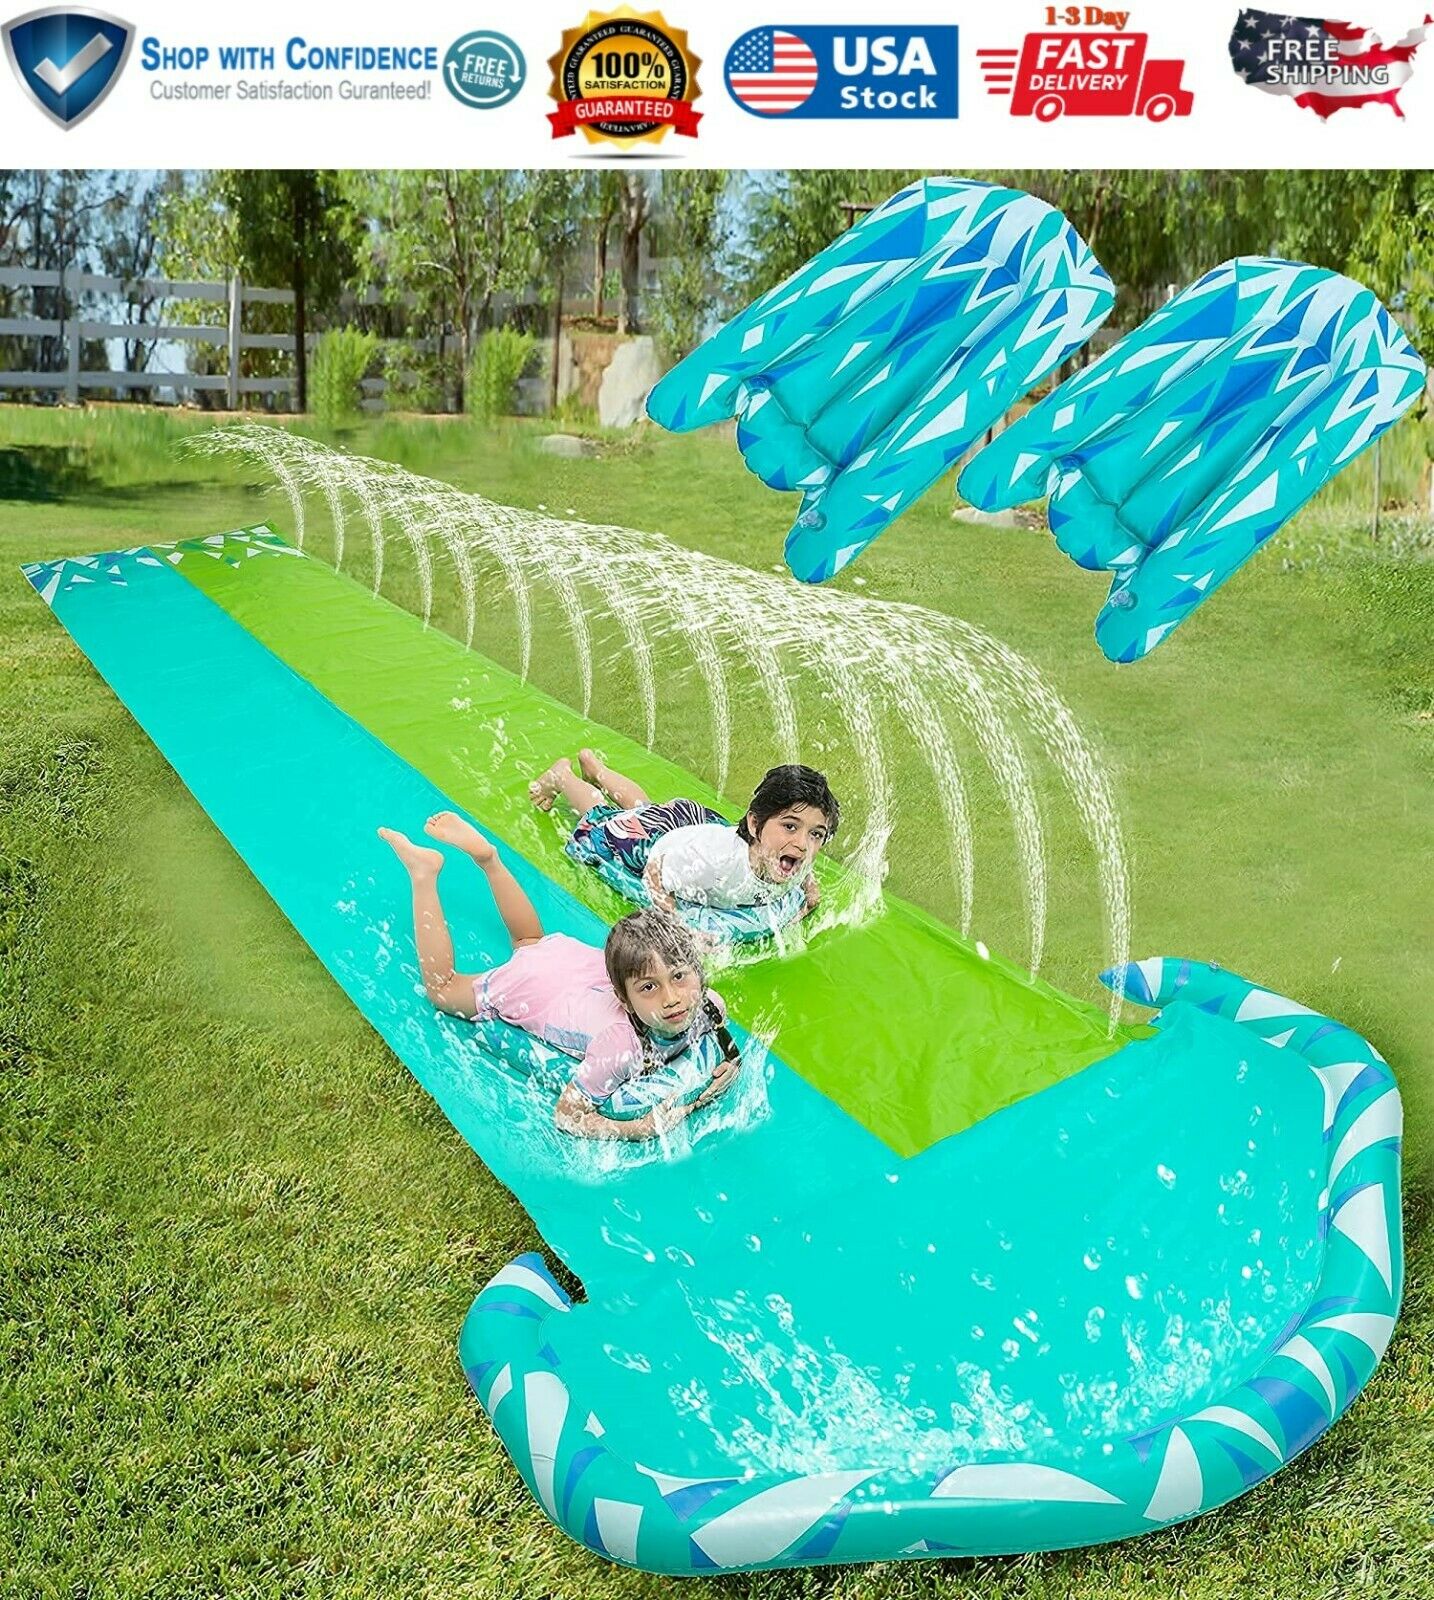 Large 20 Ft Outdoor Water Slide Slip n Slide Backyard Summer Water Kid Toy Game